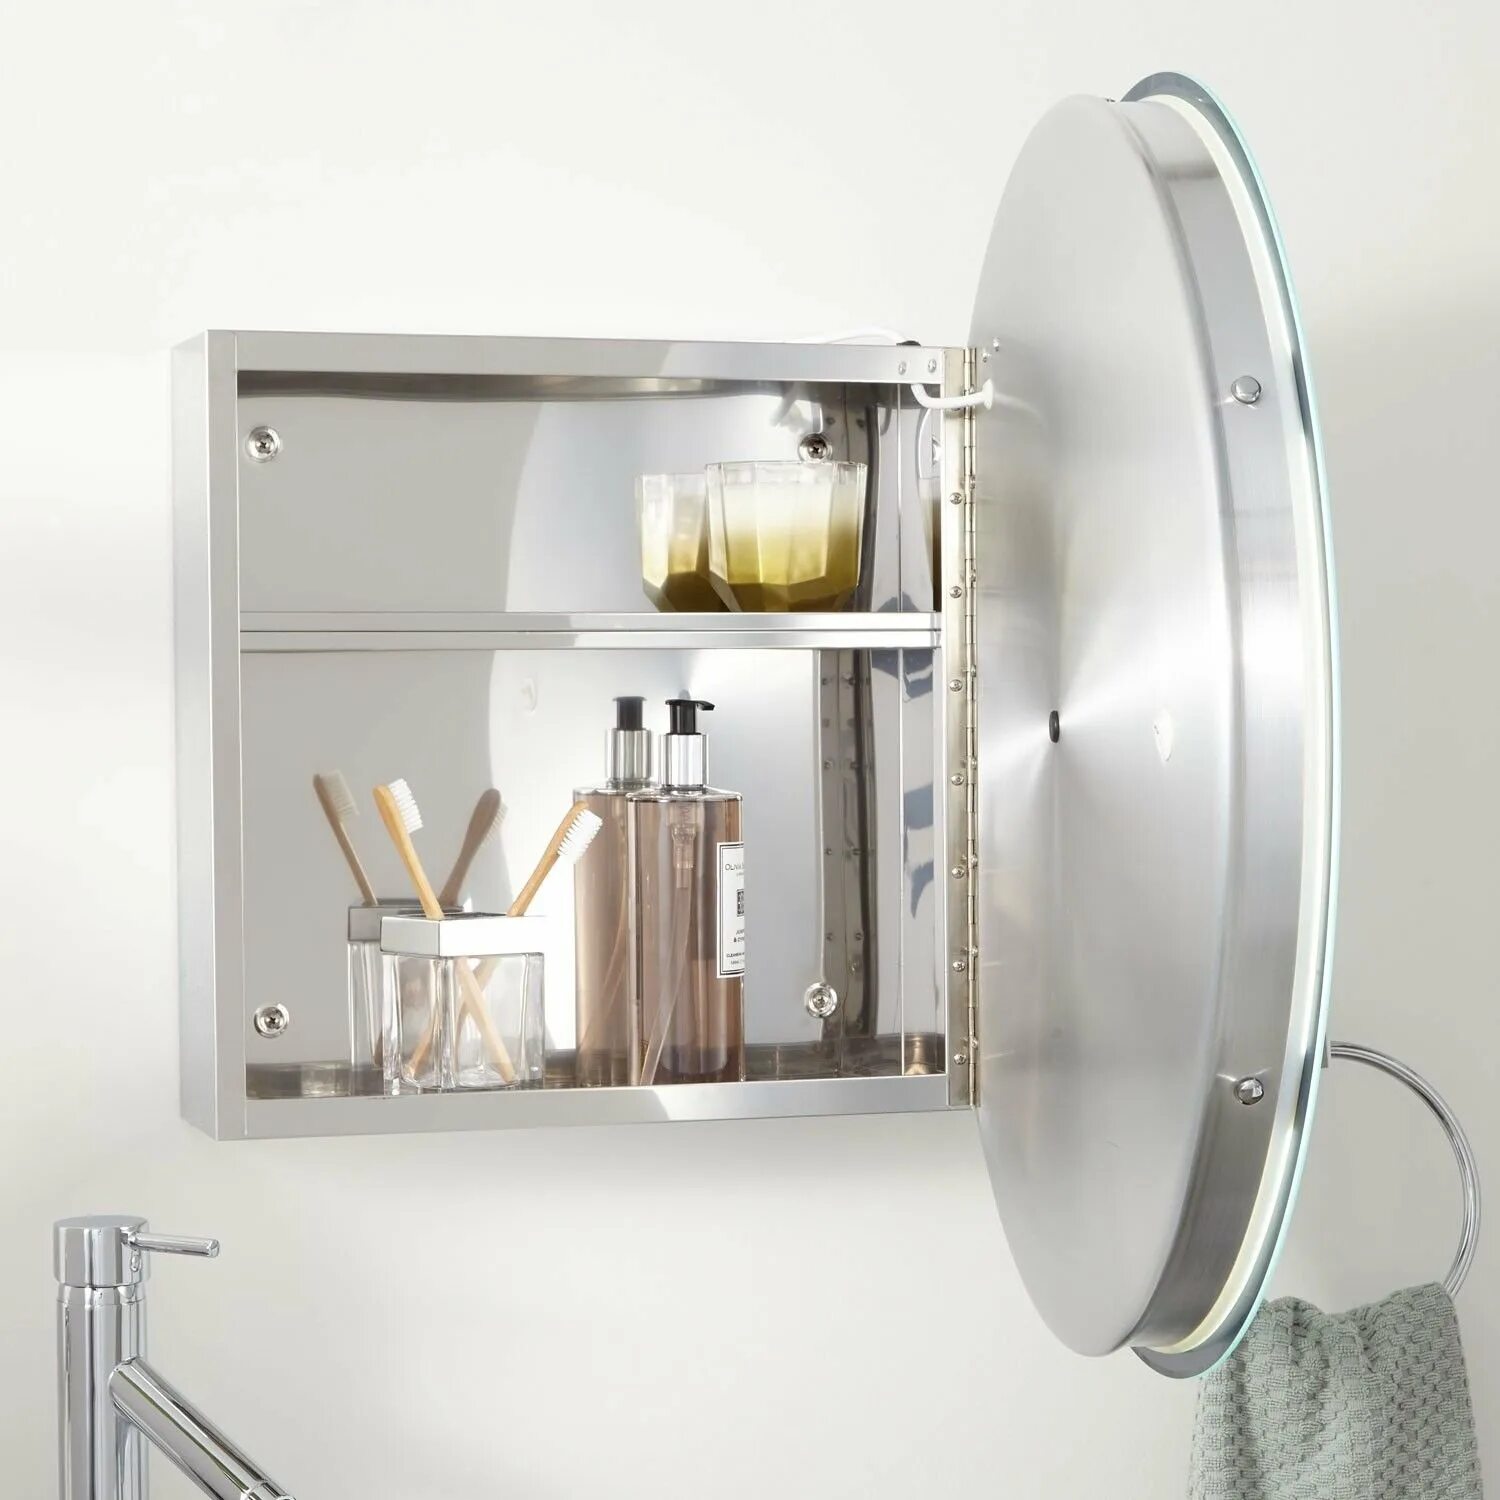 Зеркальный круглый шкафчик с подсветкой ASM-807 - Rotpunkt. Овальный зеркальный шкаф ASM 810. ASM-801 - Rotpunkt. Круглое зеркало с шкафчиком в ванную.